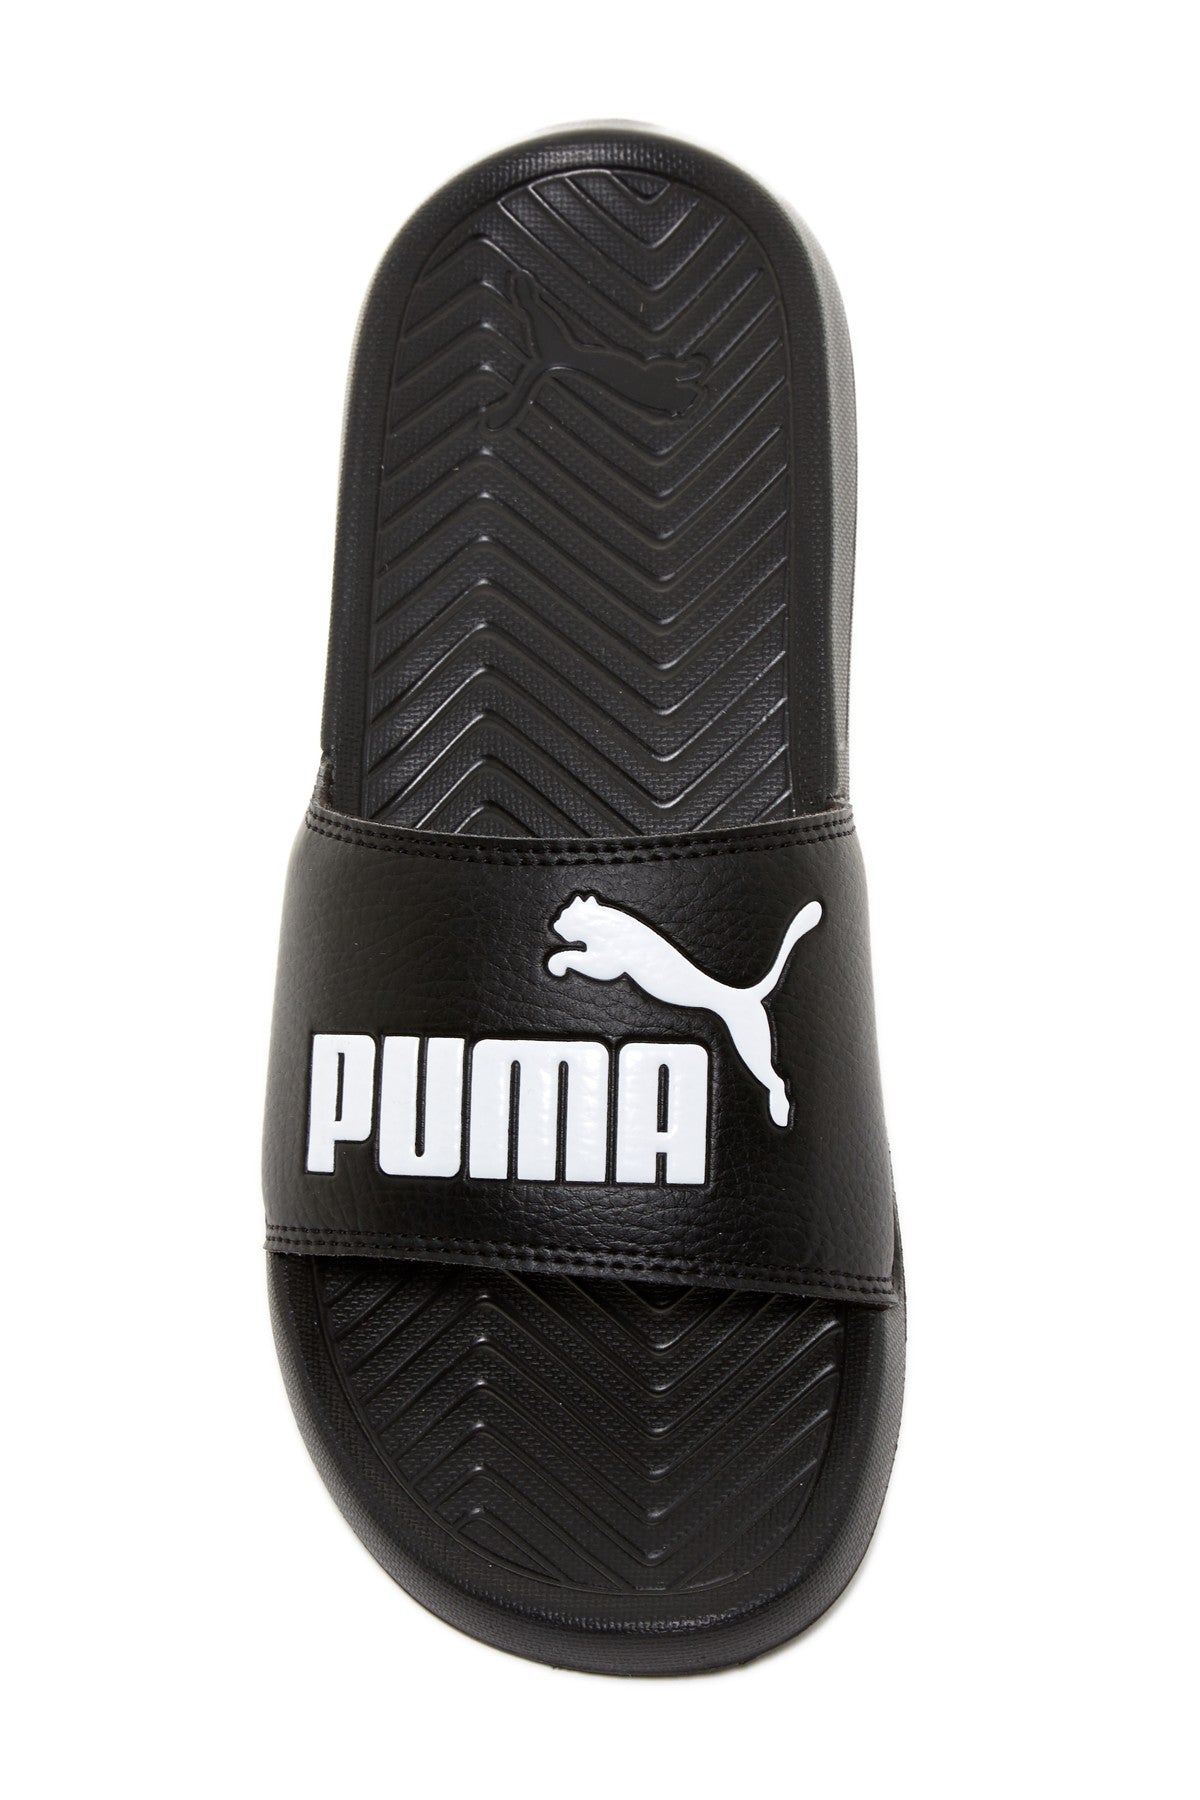 puma slides women's